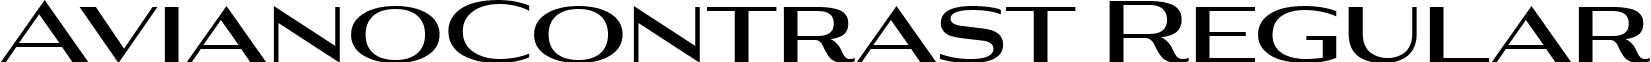 AvianoContrast Regular font - Aviano Contrast Bold.ttf